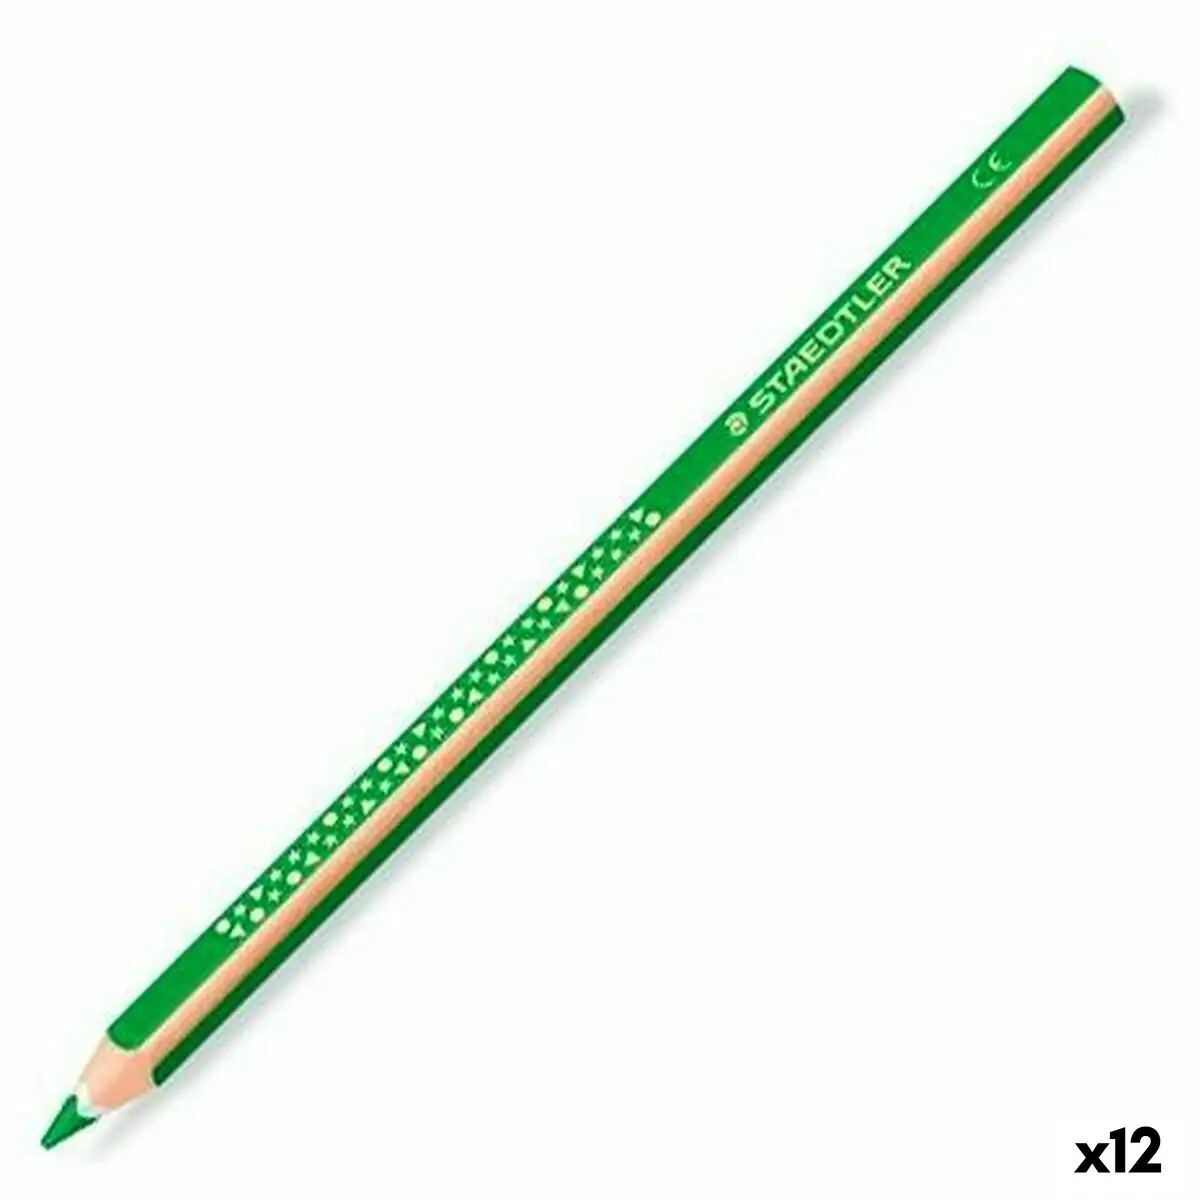 Crayons de couleur staedtler jumbo noris vert 12 unites _5647. Découvrez DIAYTAR SENEGAL - Là où le Choix Rencontre la Qualité. Parcourez notre gamme diversifiée et choisissez parmi des produits conçus pour exceller dans tous les aspects de votre vie.